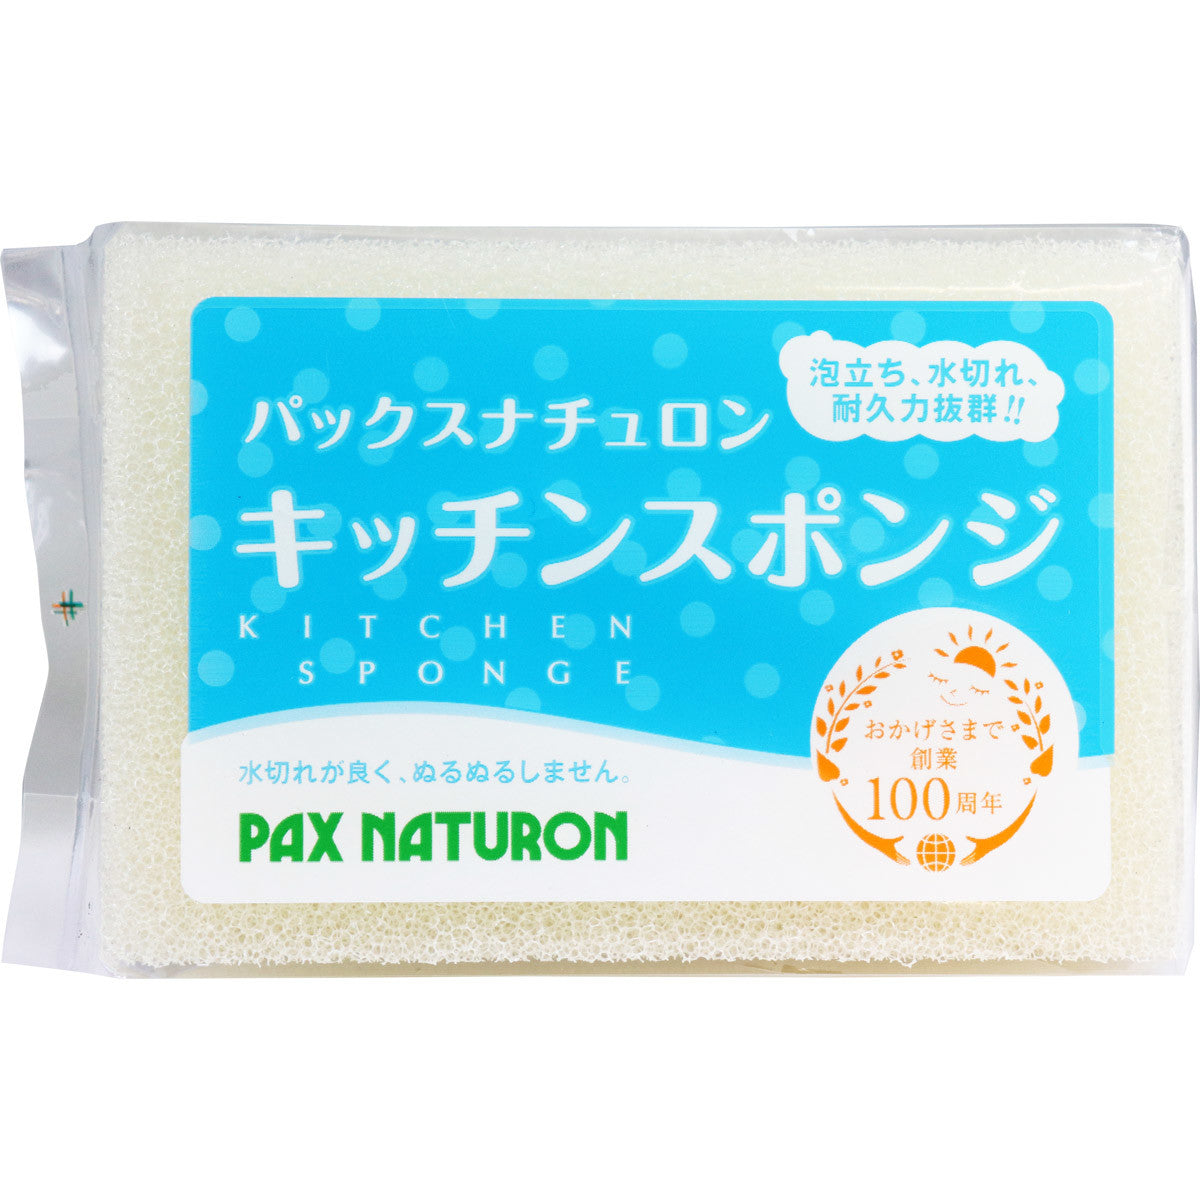 Pax Naturon - Natural Kitchen Sponge